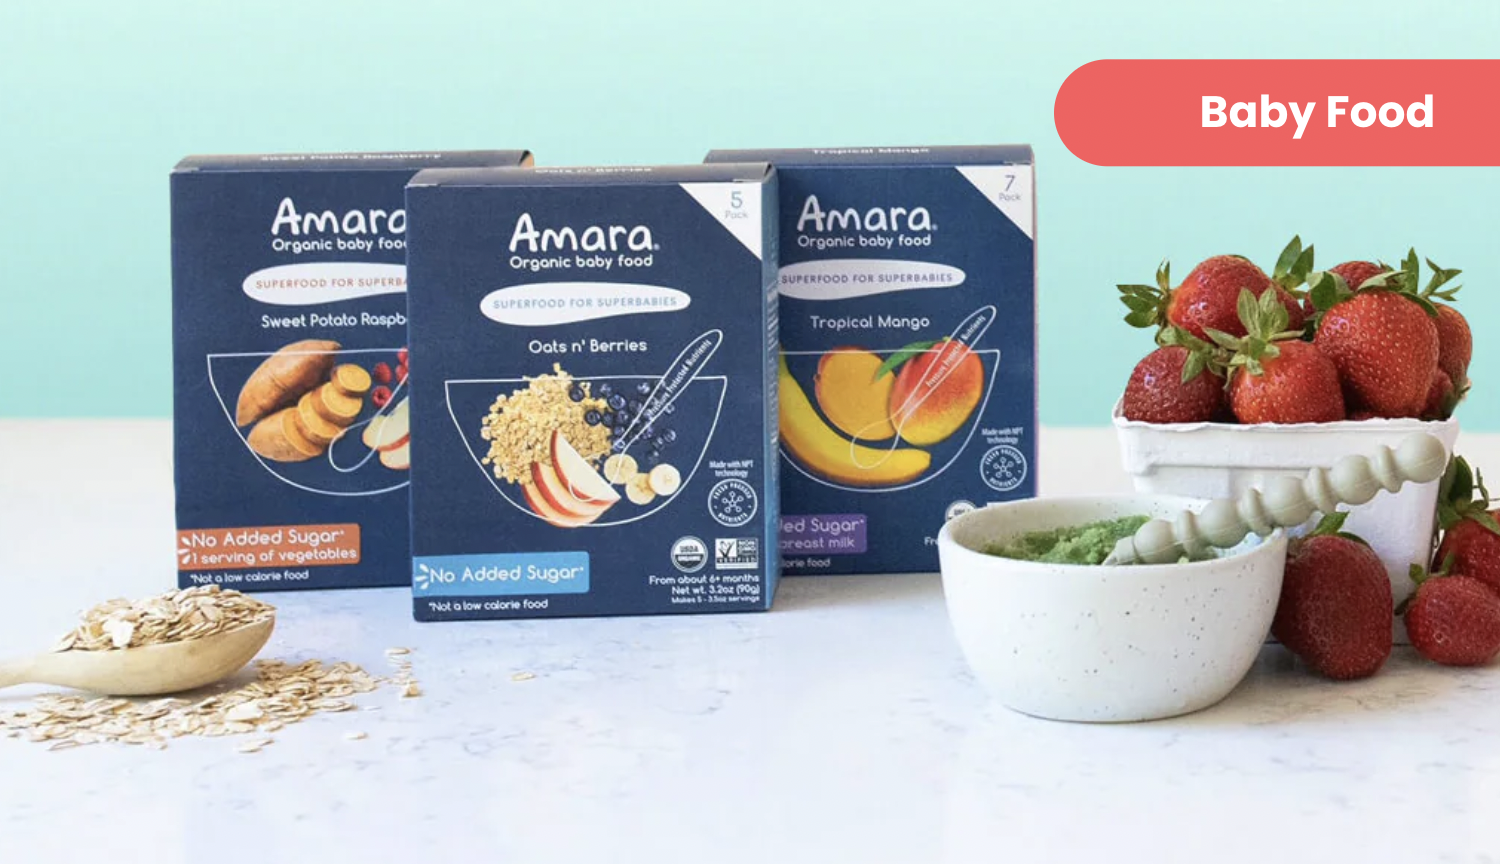 DTC婴儿食品品牌Amara完成2000万美元B轮融资